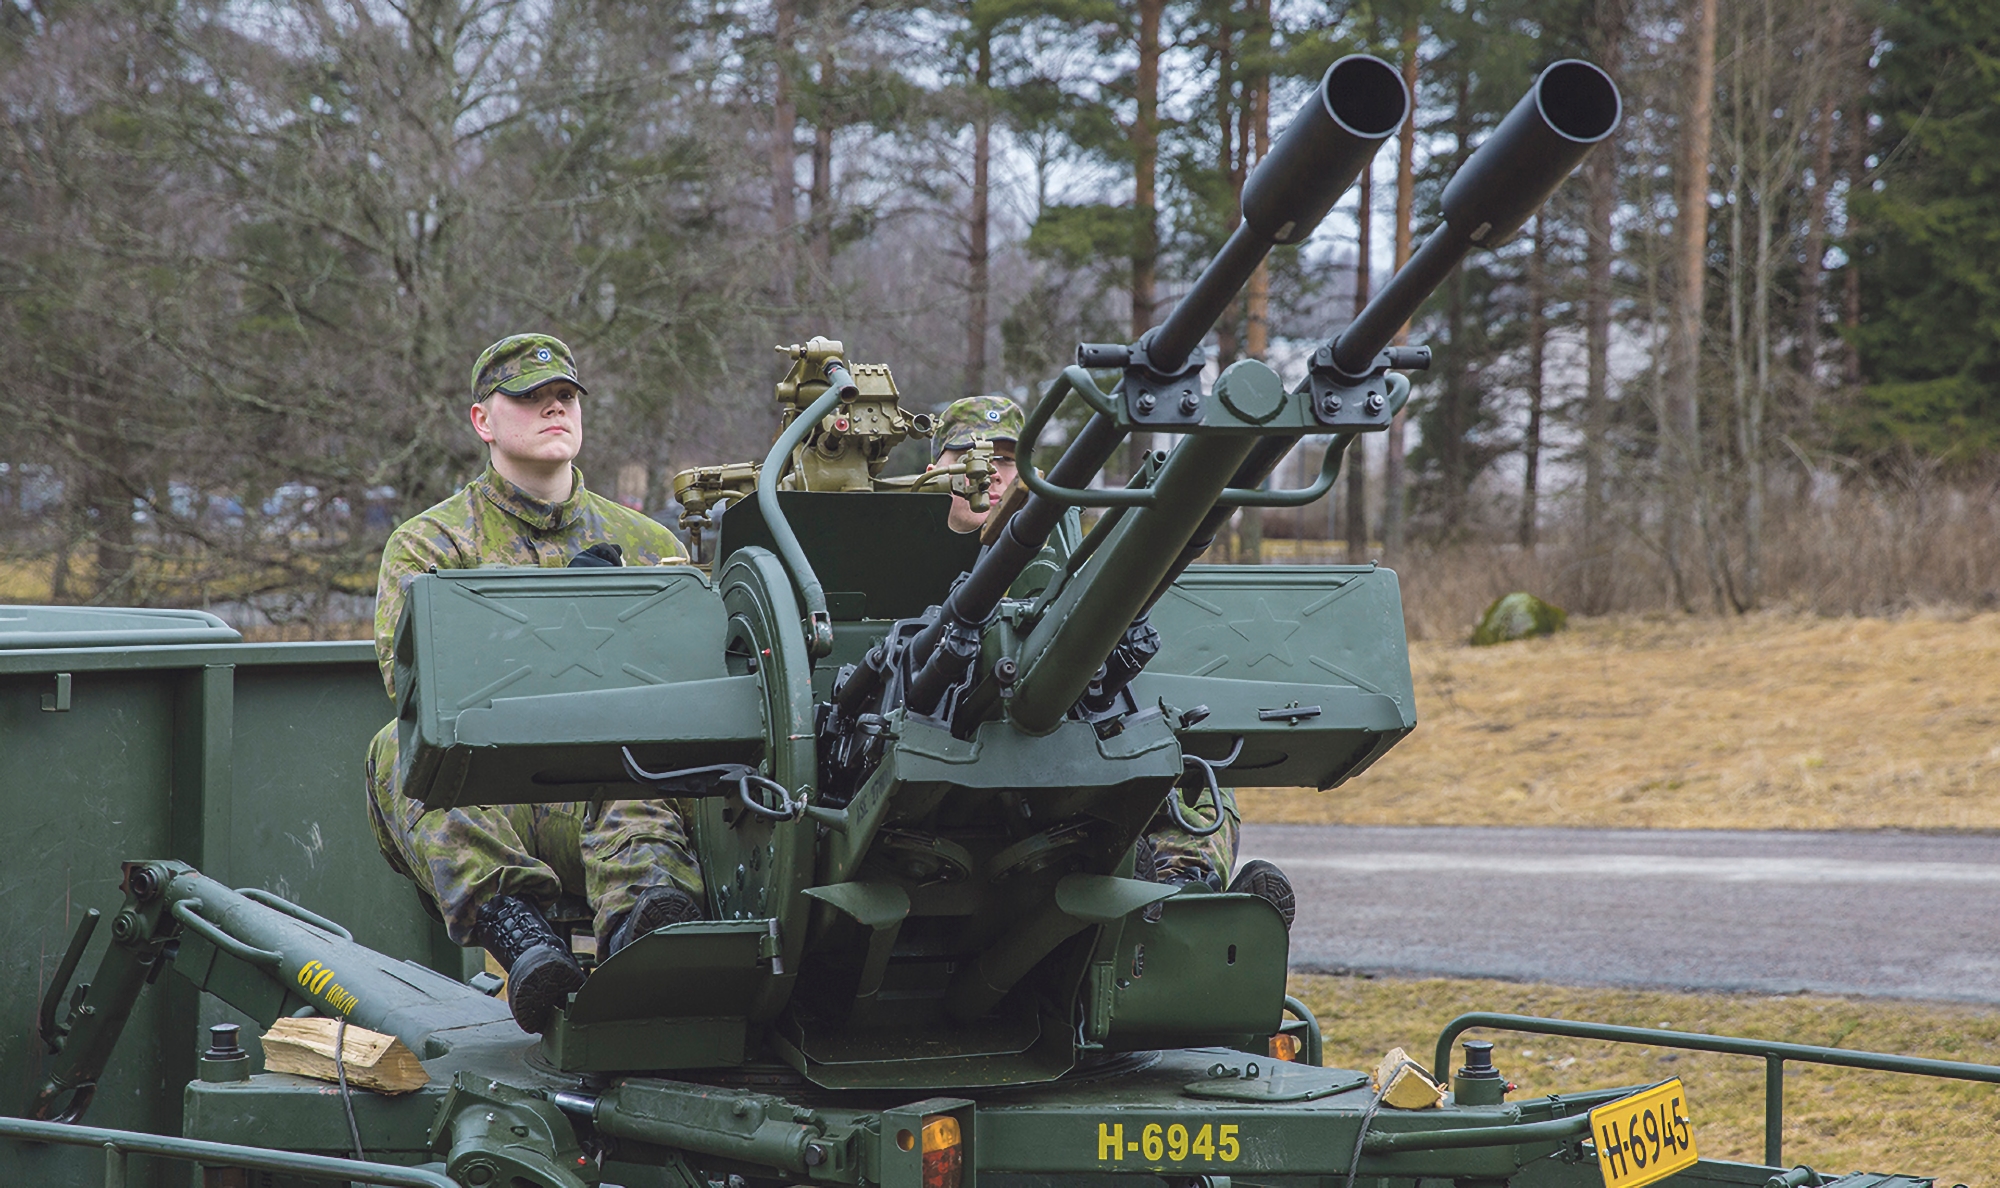 ВСУ получили финские зенитные установки 23 ItK 61, они могут делать до 2000 выстрелов в минуту и поражать цели на расстоянии 2.5 км